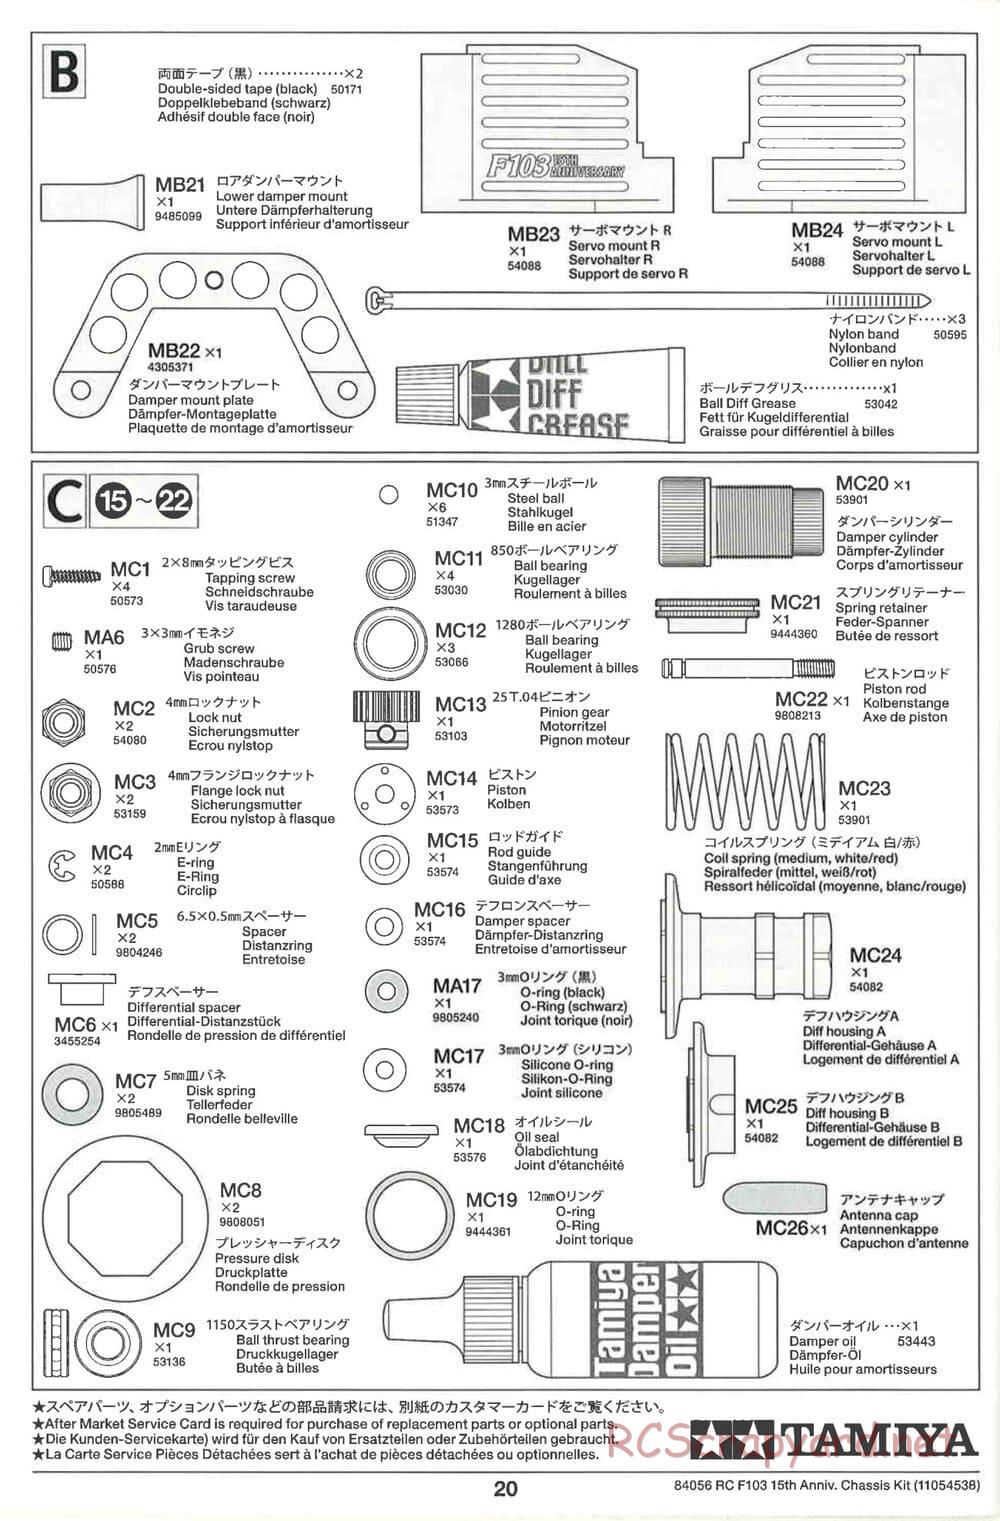 Tamiya - F103 15th Anniversary Chassis - Manual - Page 20